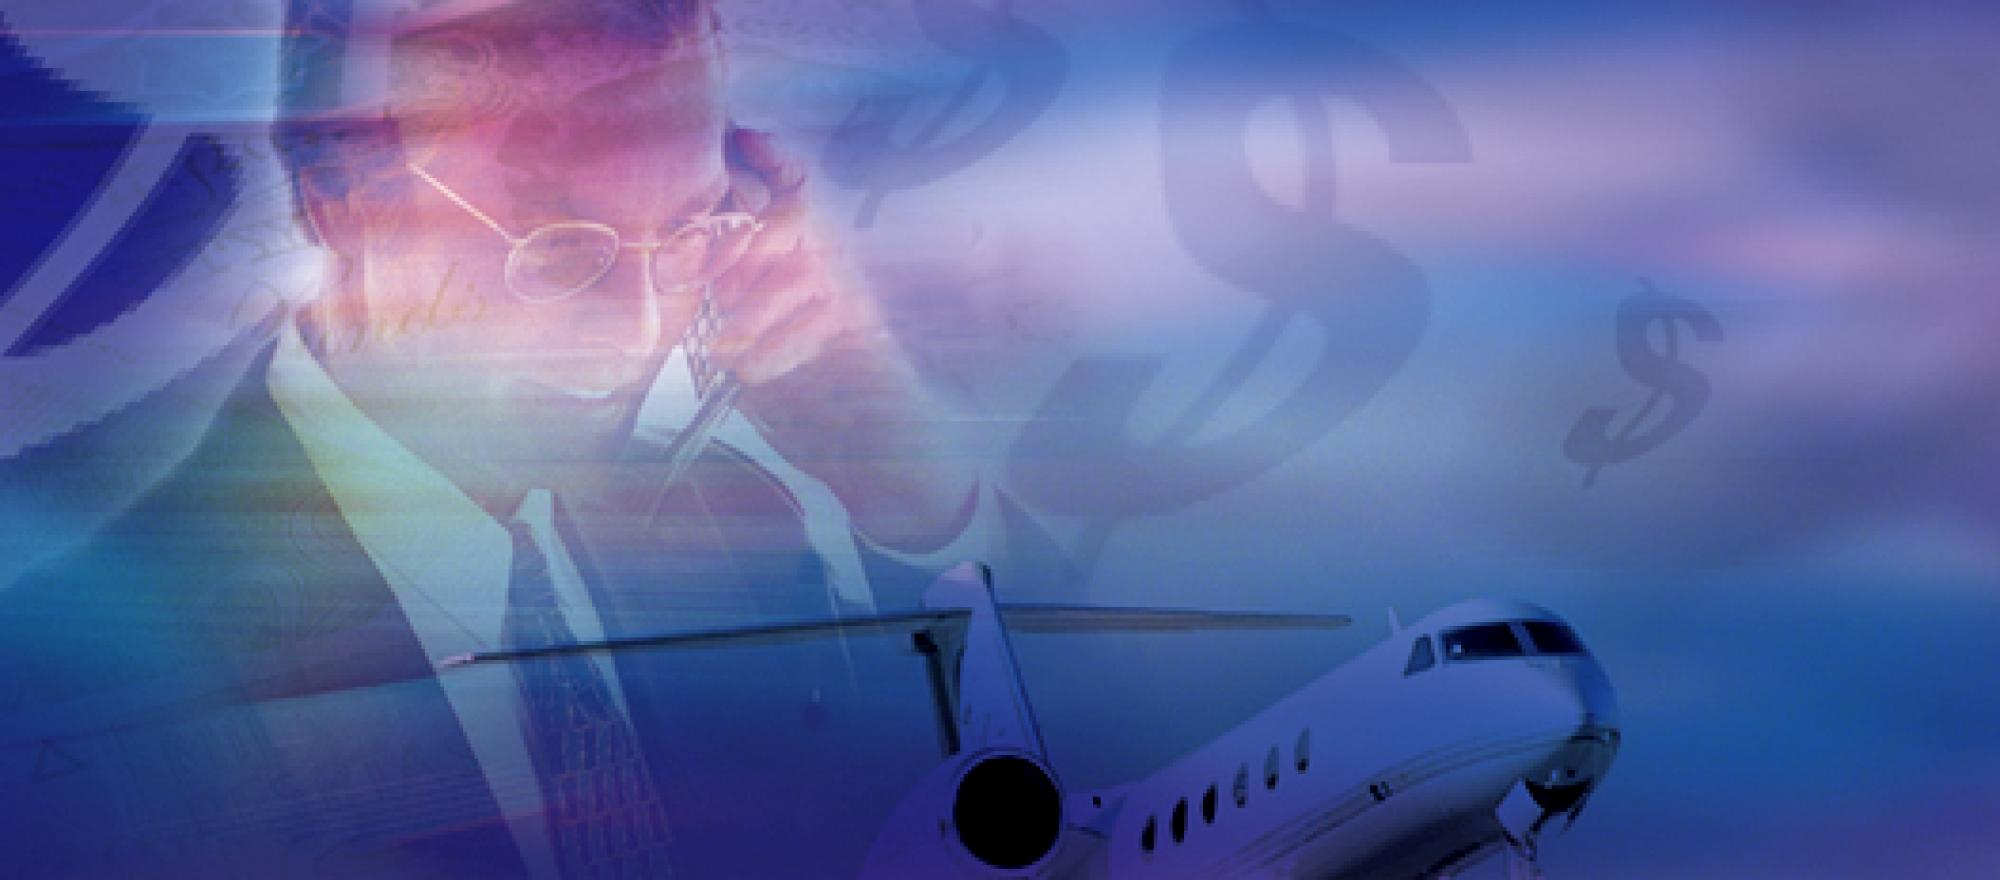 Aircraft Finance Business Jet Traveler